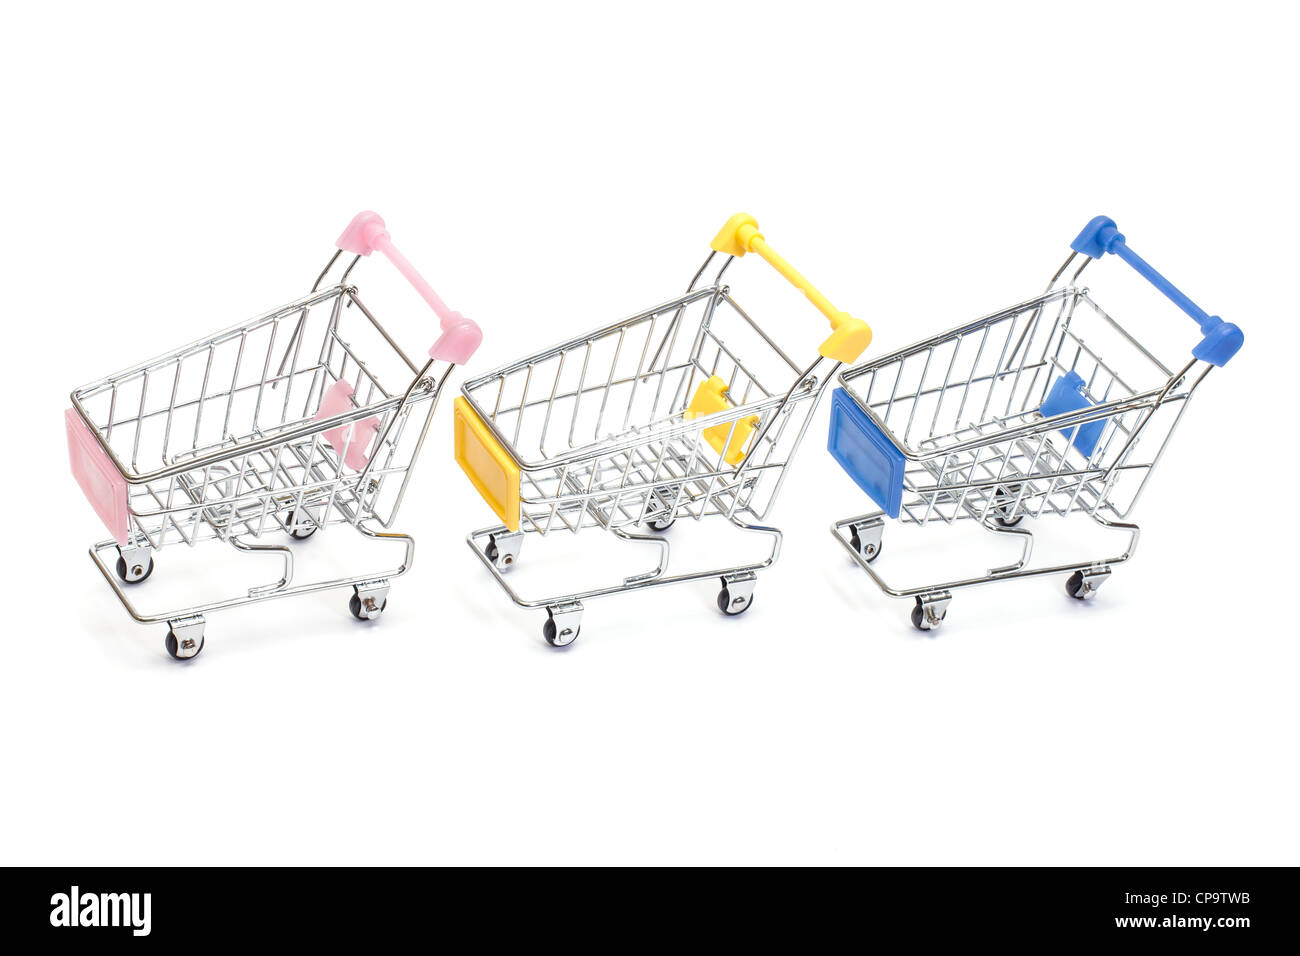 Shopping carts isolated on white background Stock Photo